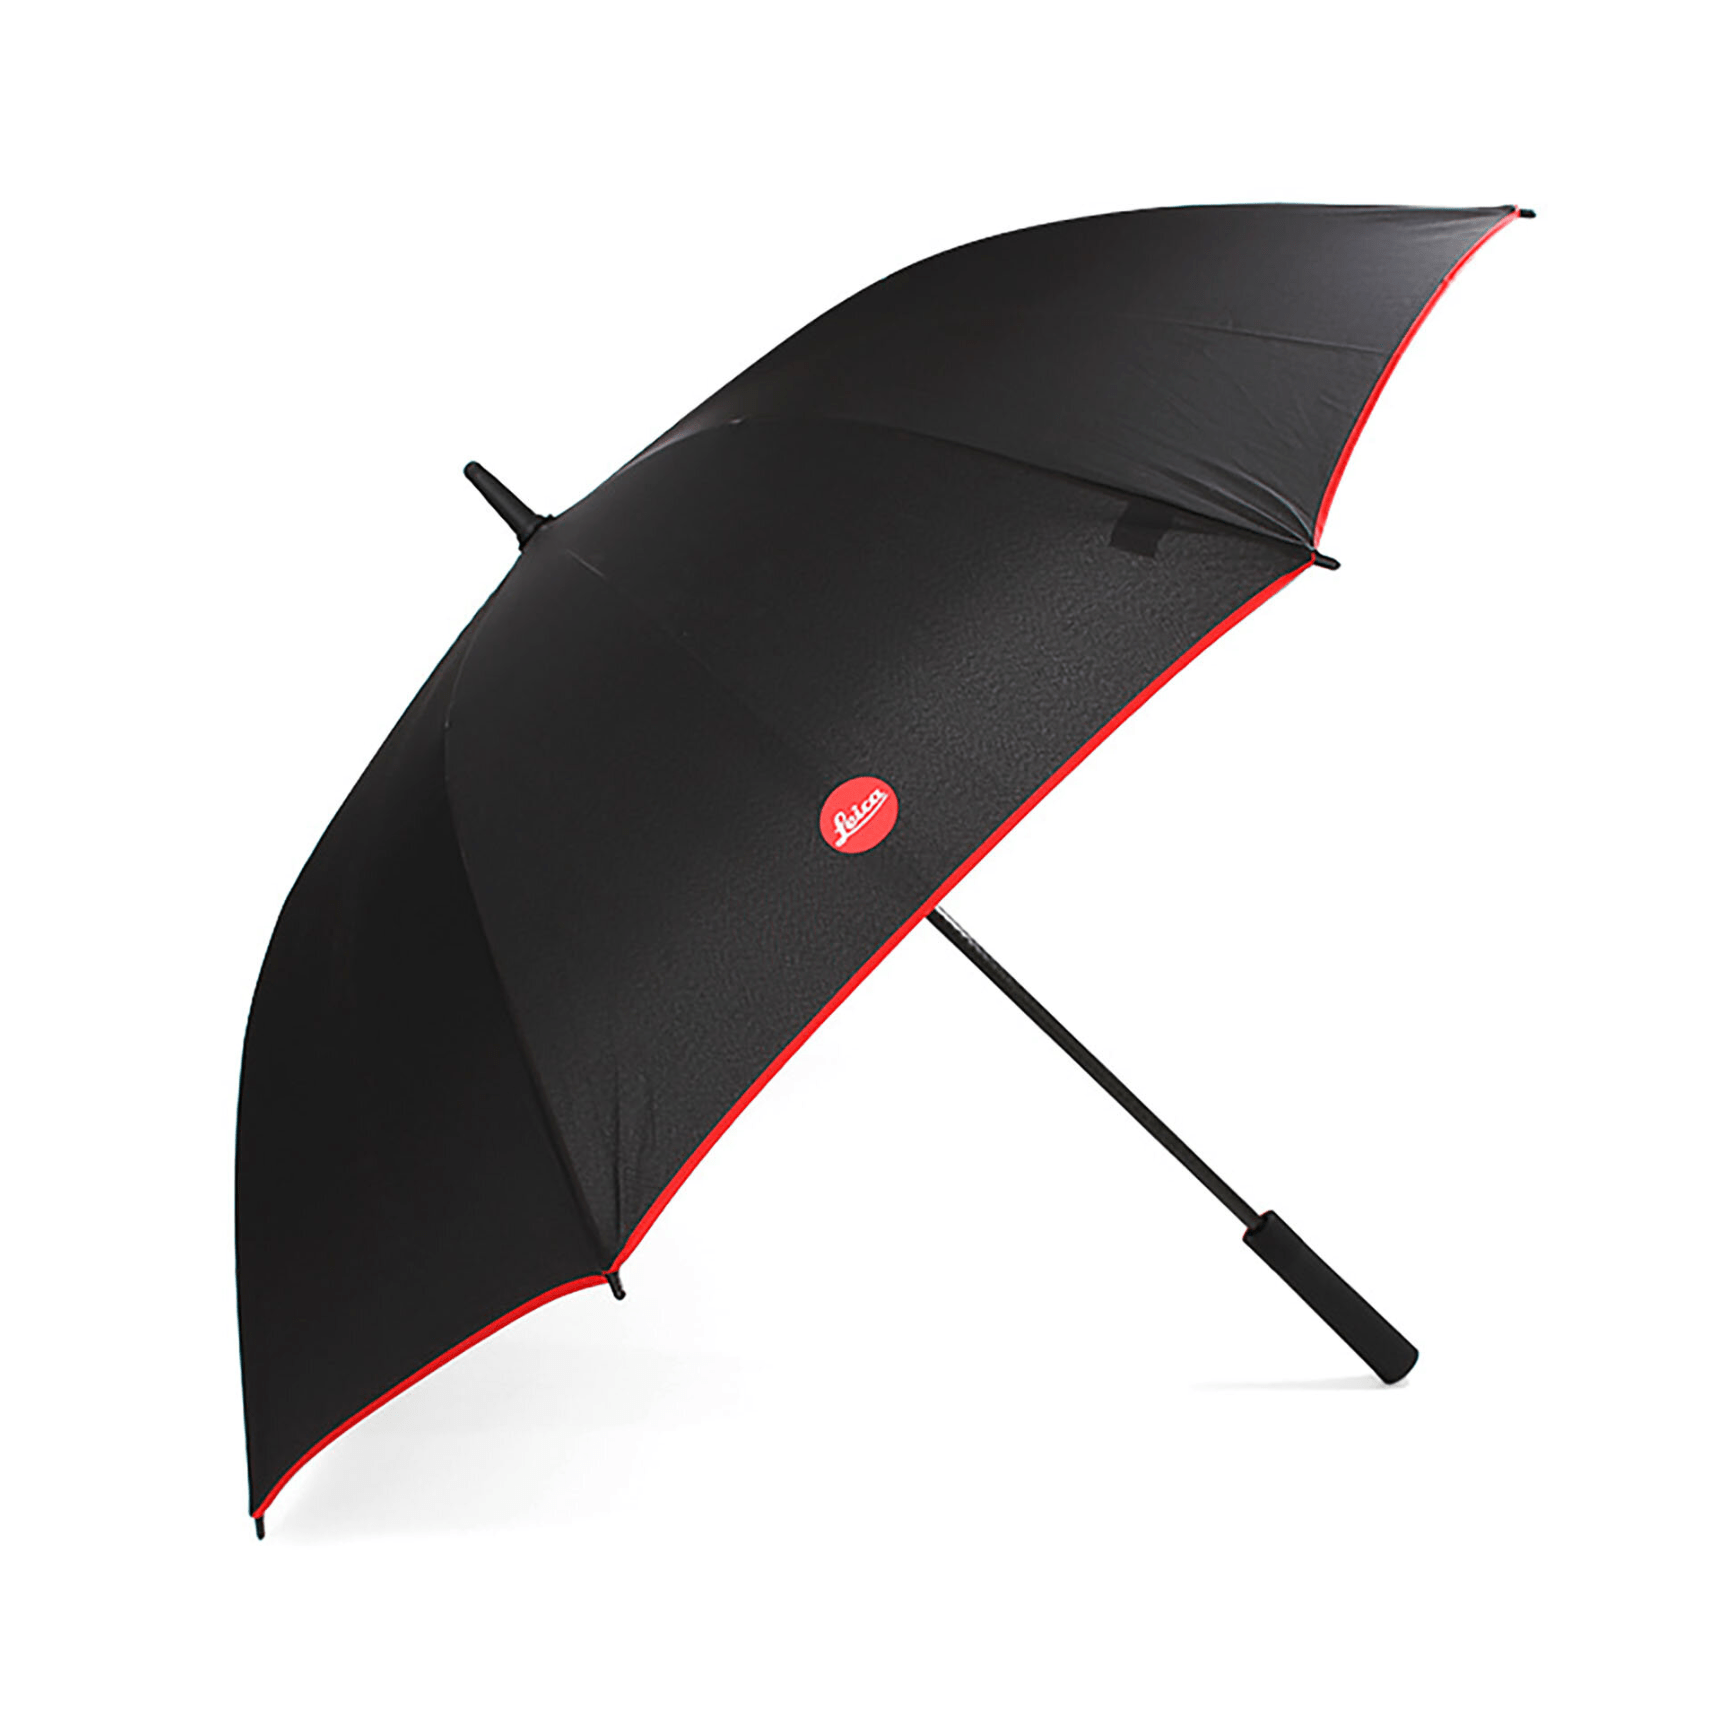 Leica Umbrella - B&C Camera